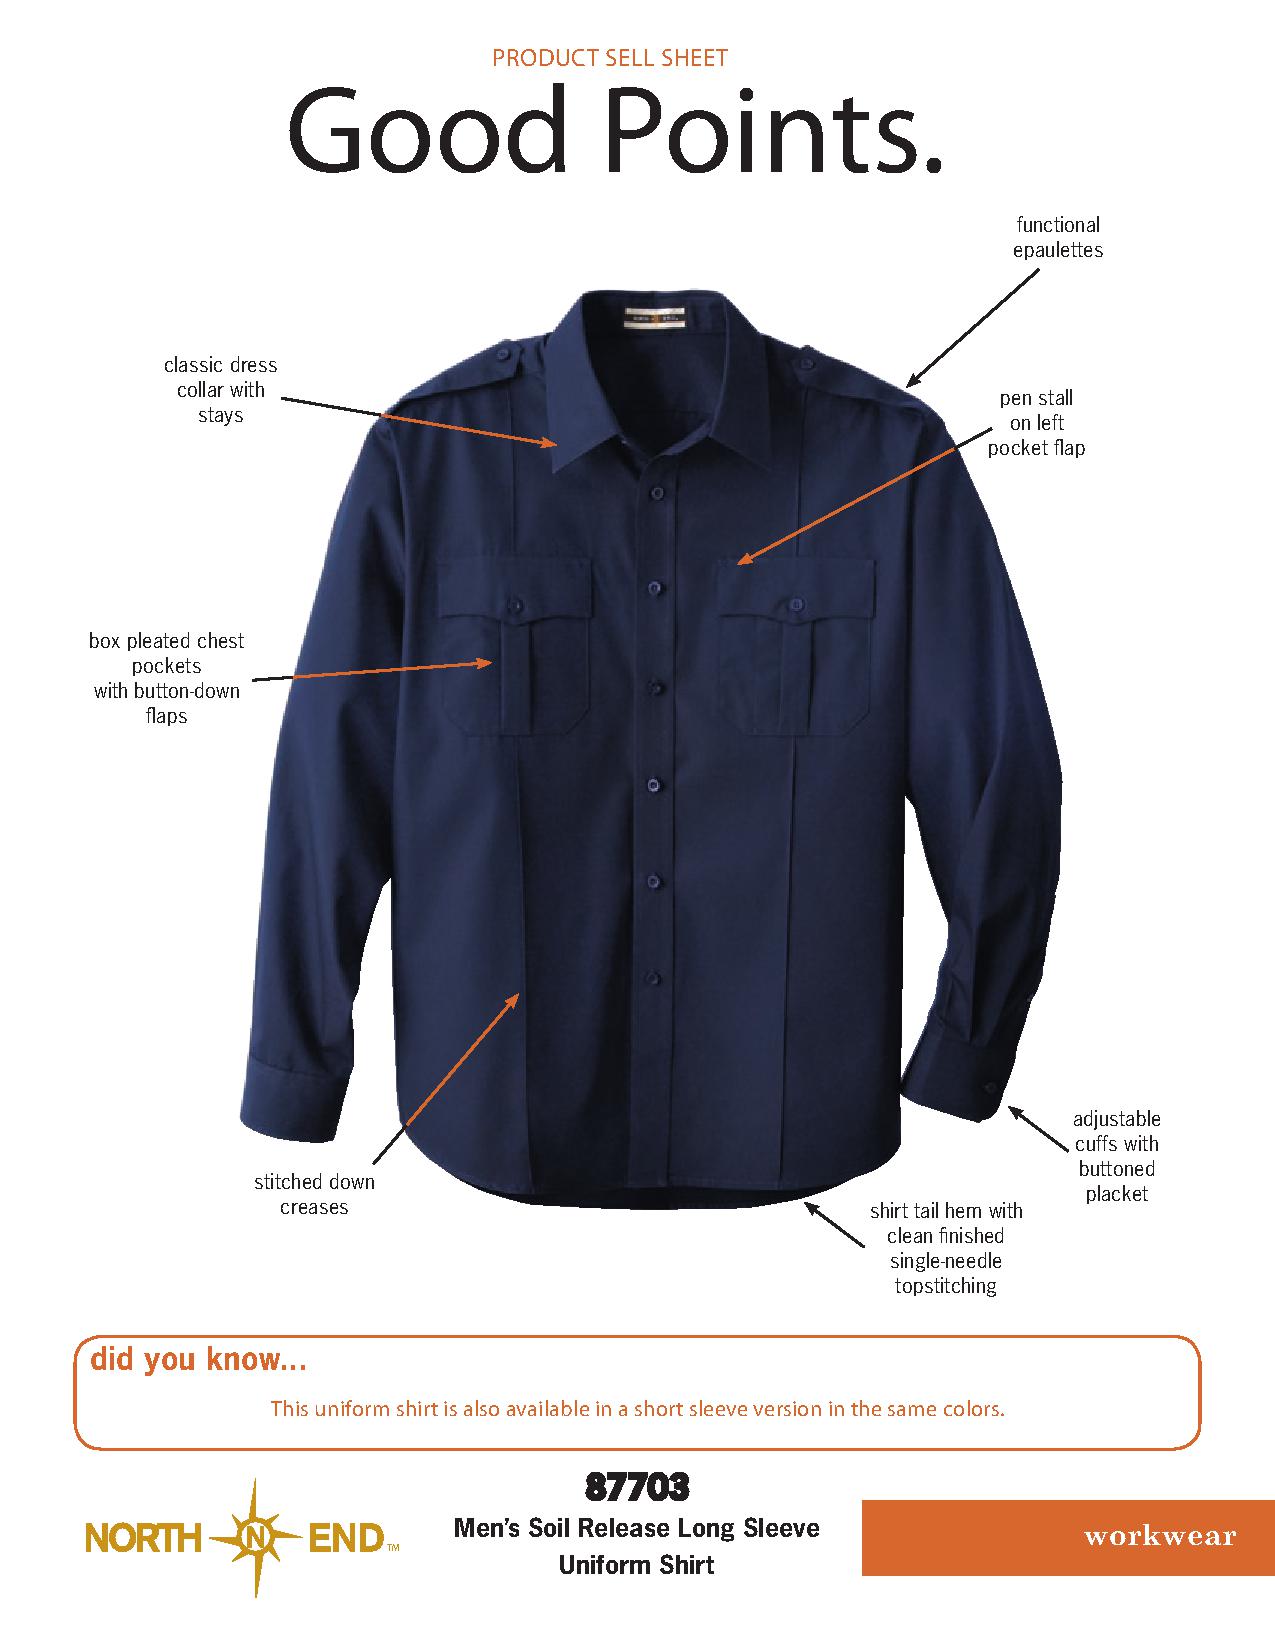 Ash City Service 87703 - Men's Soil Release Long Sleeve Uniform Shirt